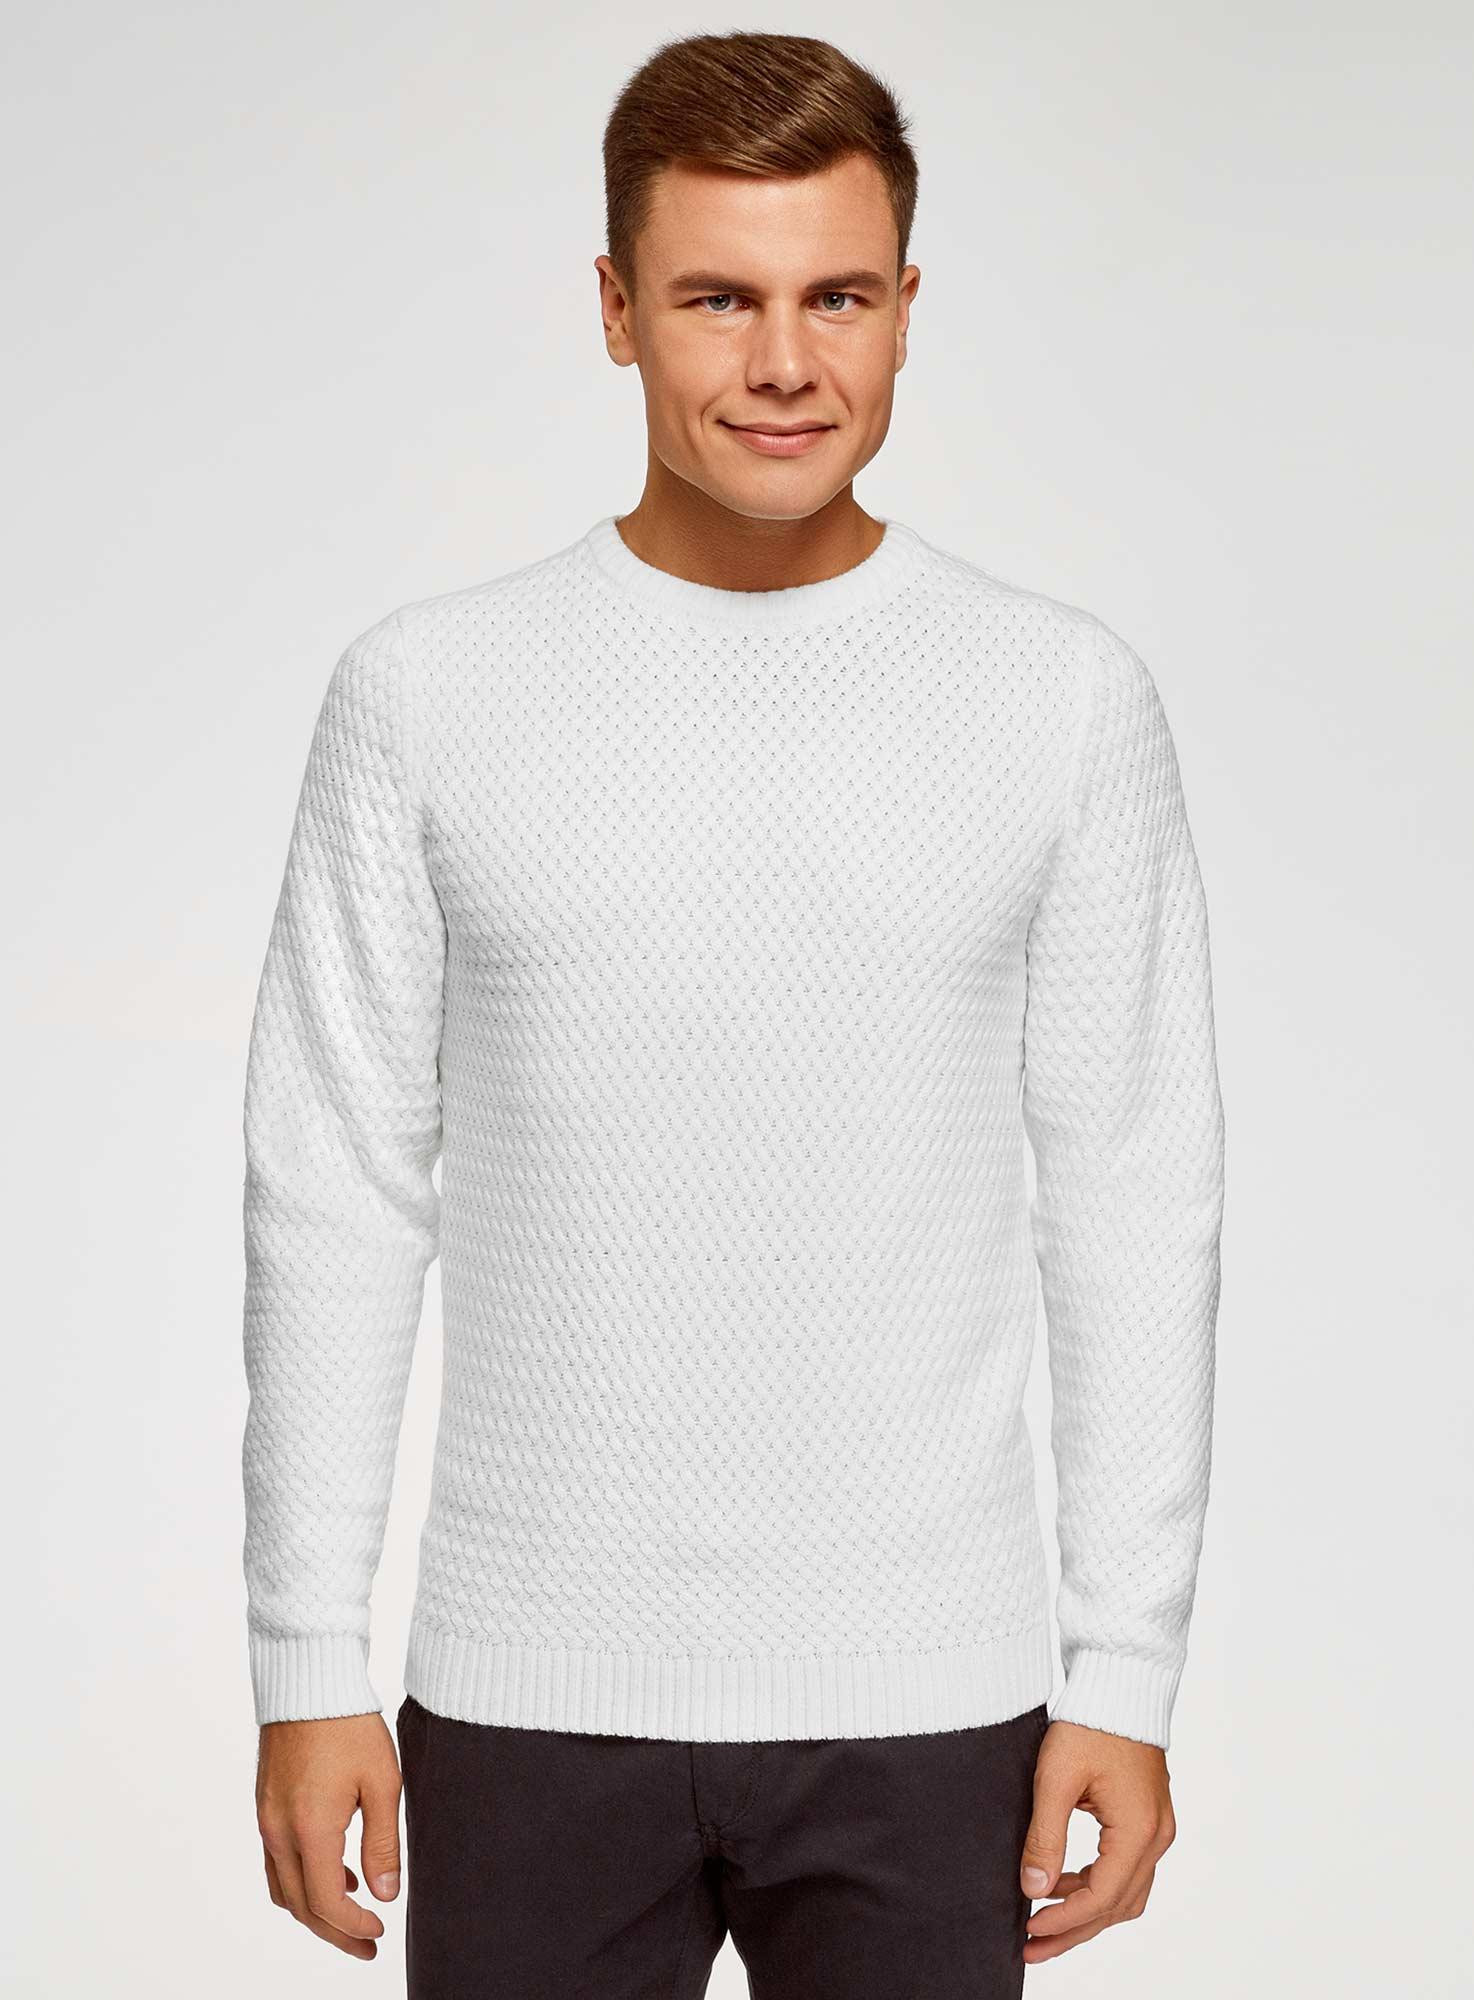 Магазины свитеров мужские. Белый джемпер мужской. Белый свитер мужской. Белая водолазка мужская. Белый пуловер мужской.